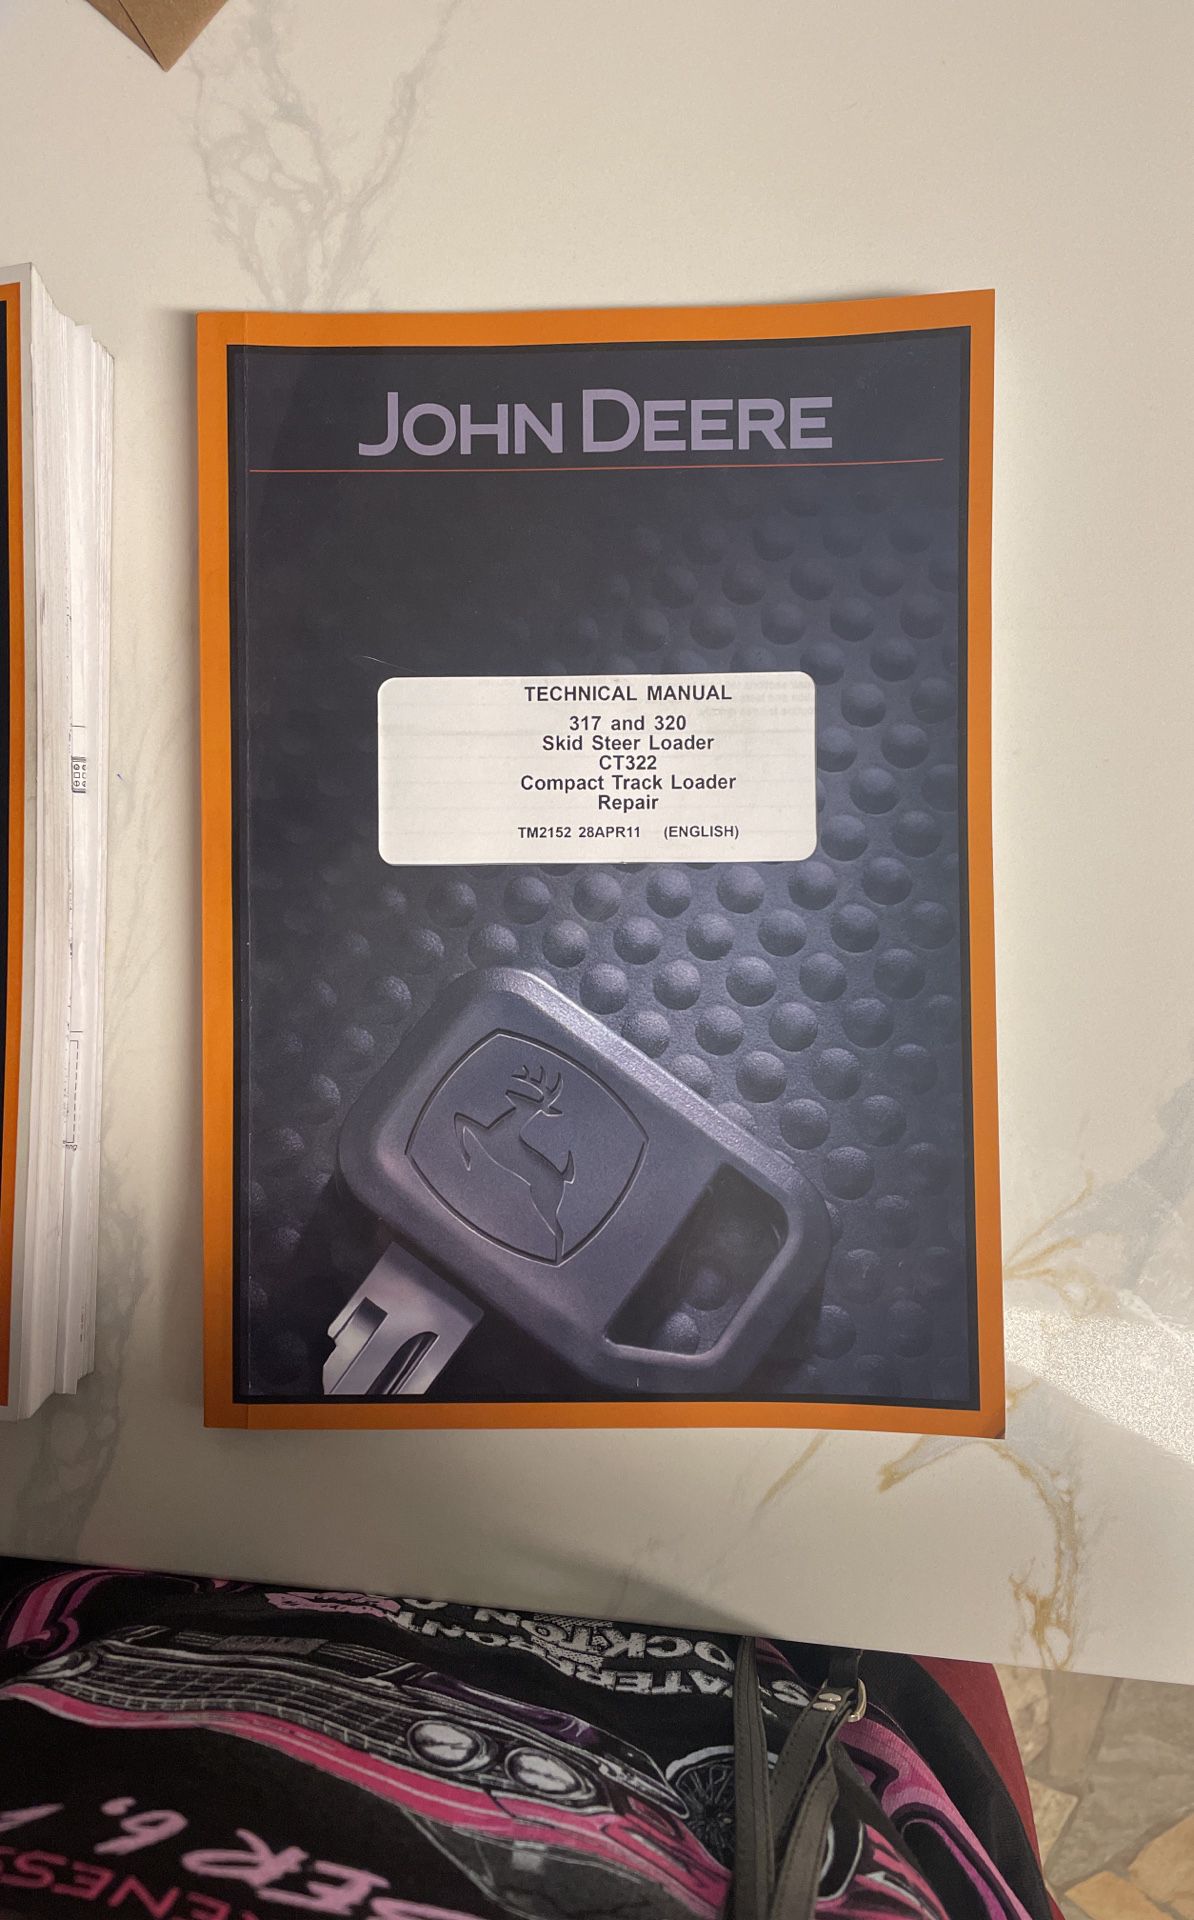 John Deere Technical Manual 